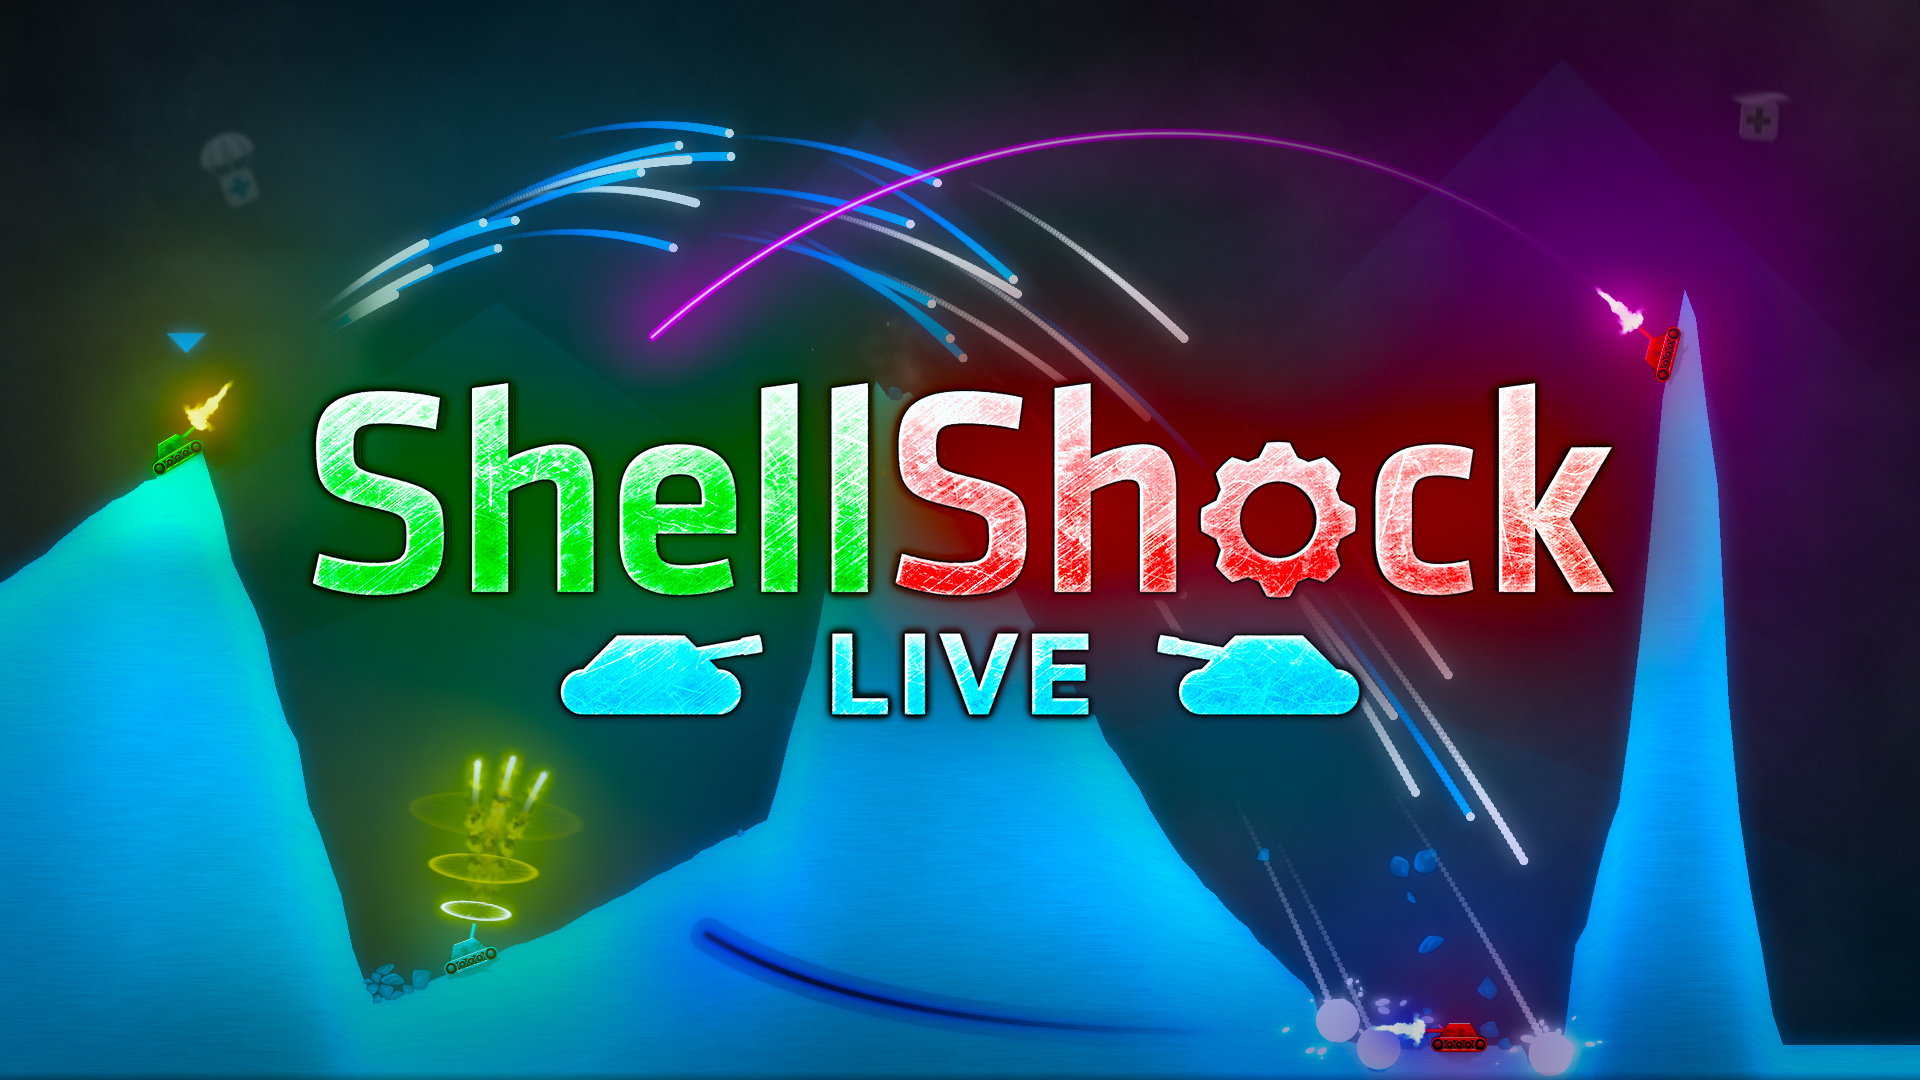 shellshock live xbox one